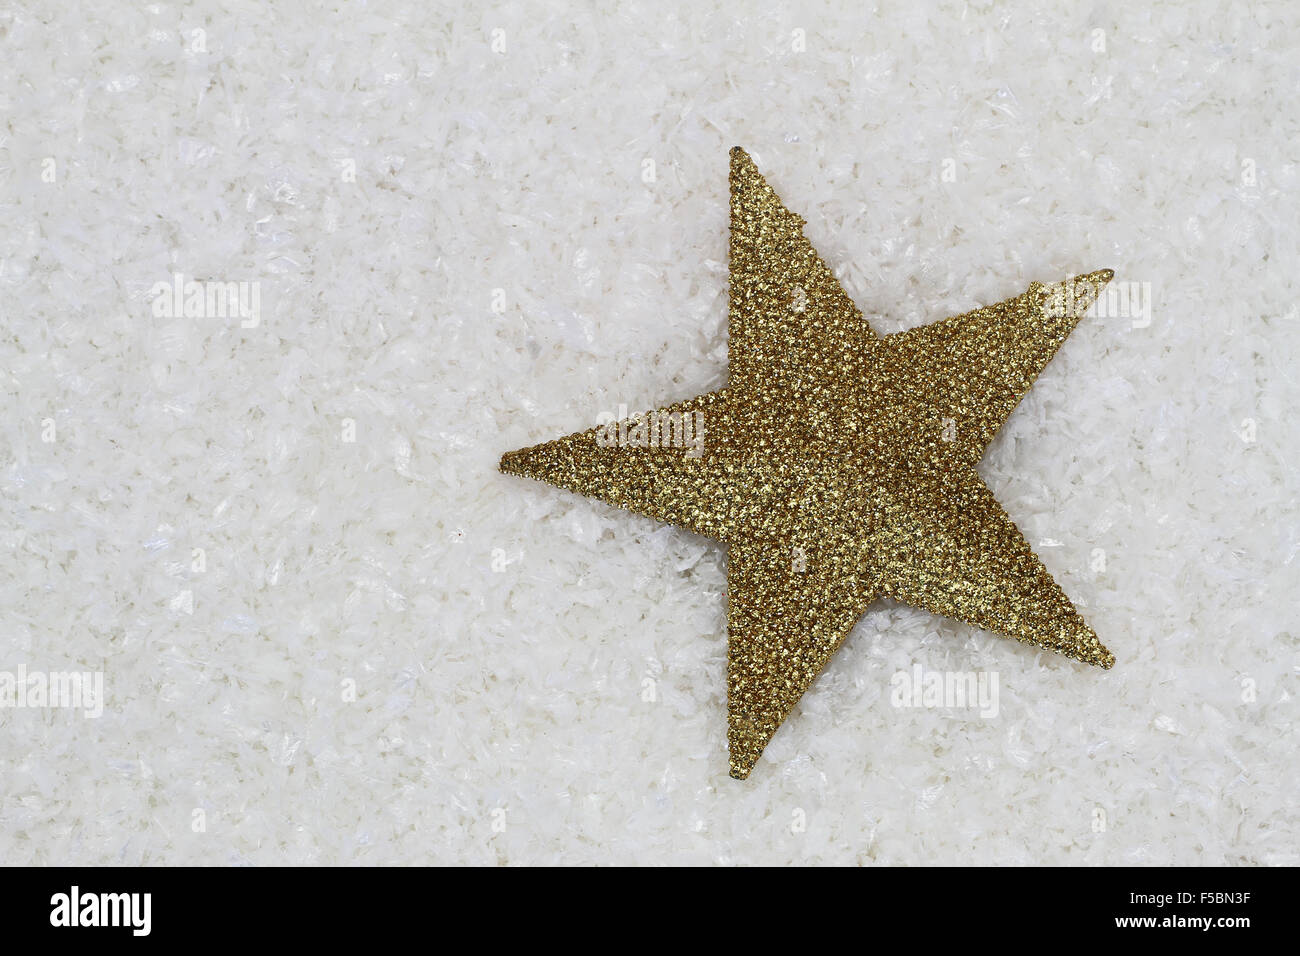 Star couverte de golden glitter sur surface enneigée with copy space Banque D'Images